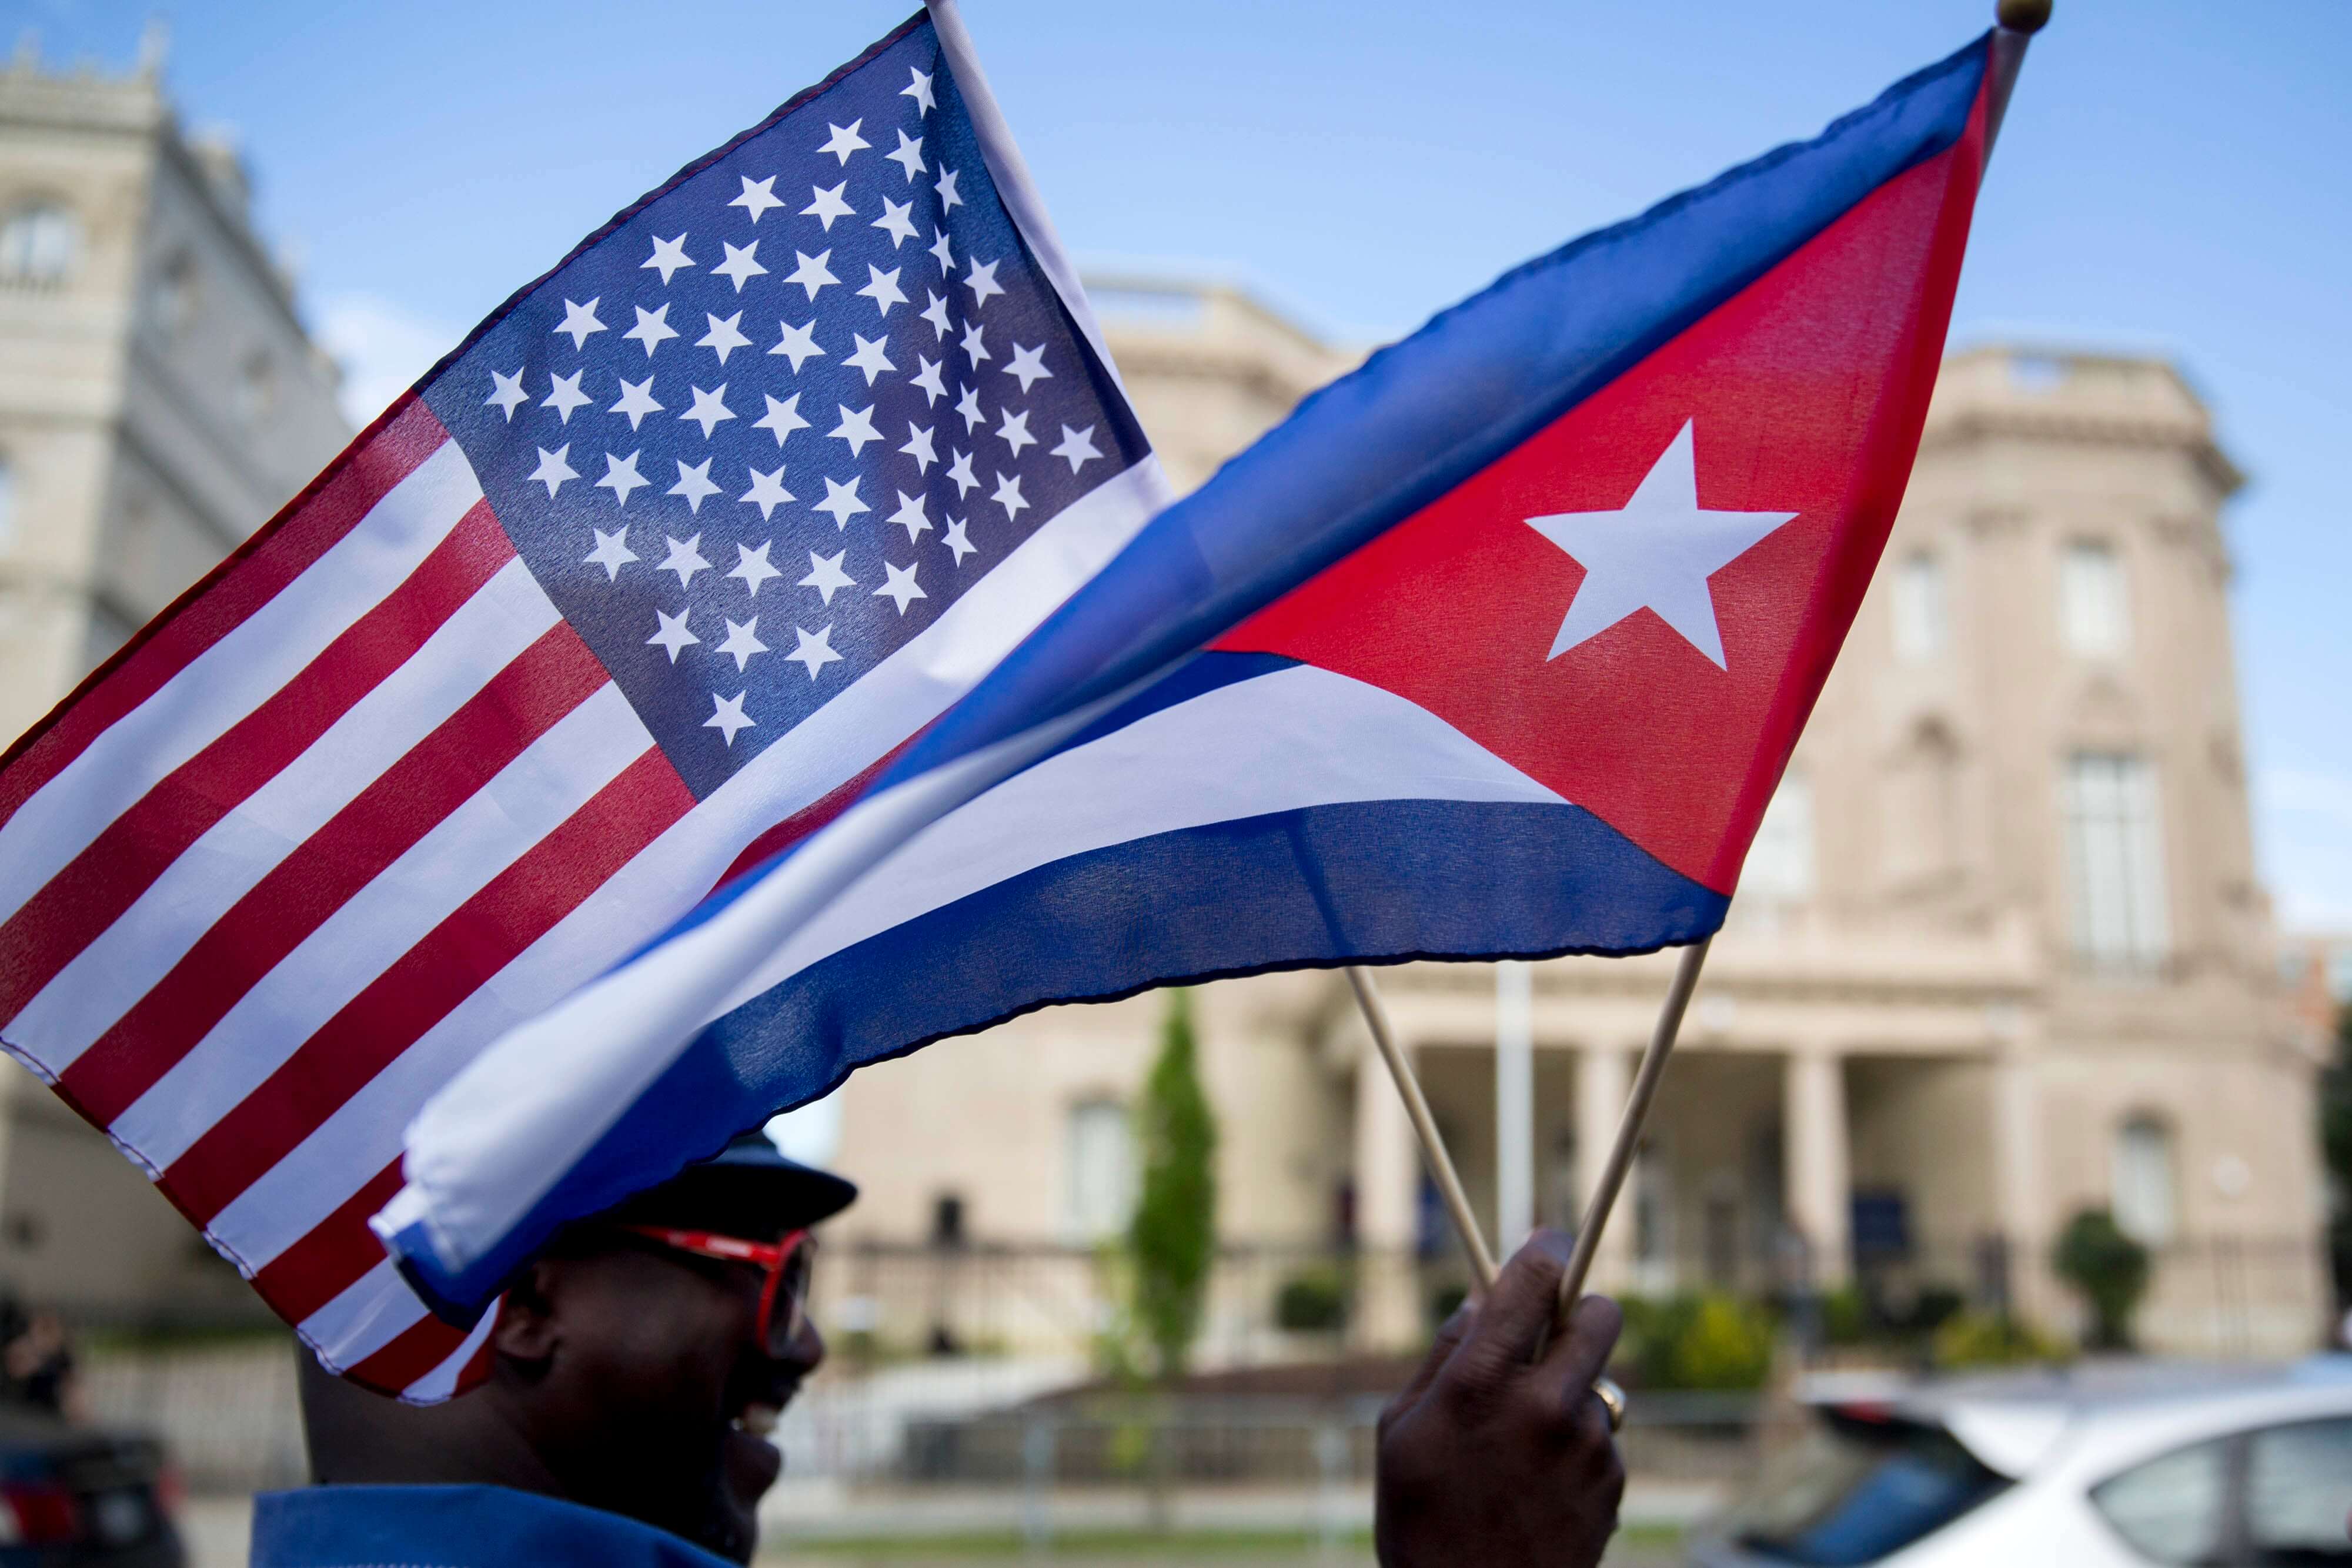 اخبار سیاسی,خبرهای سیاسی,اخبار بین الملل,آمریکا و کوبا